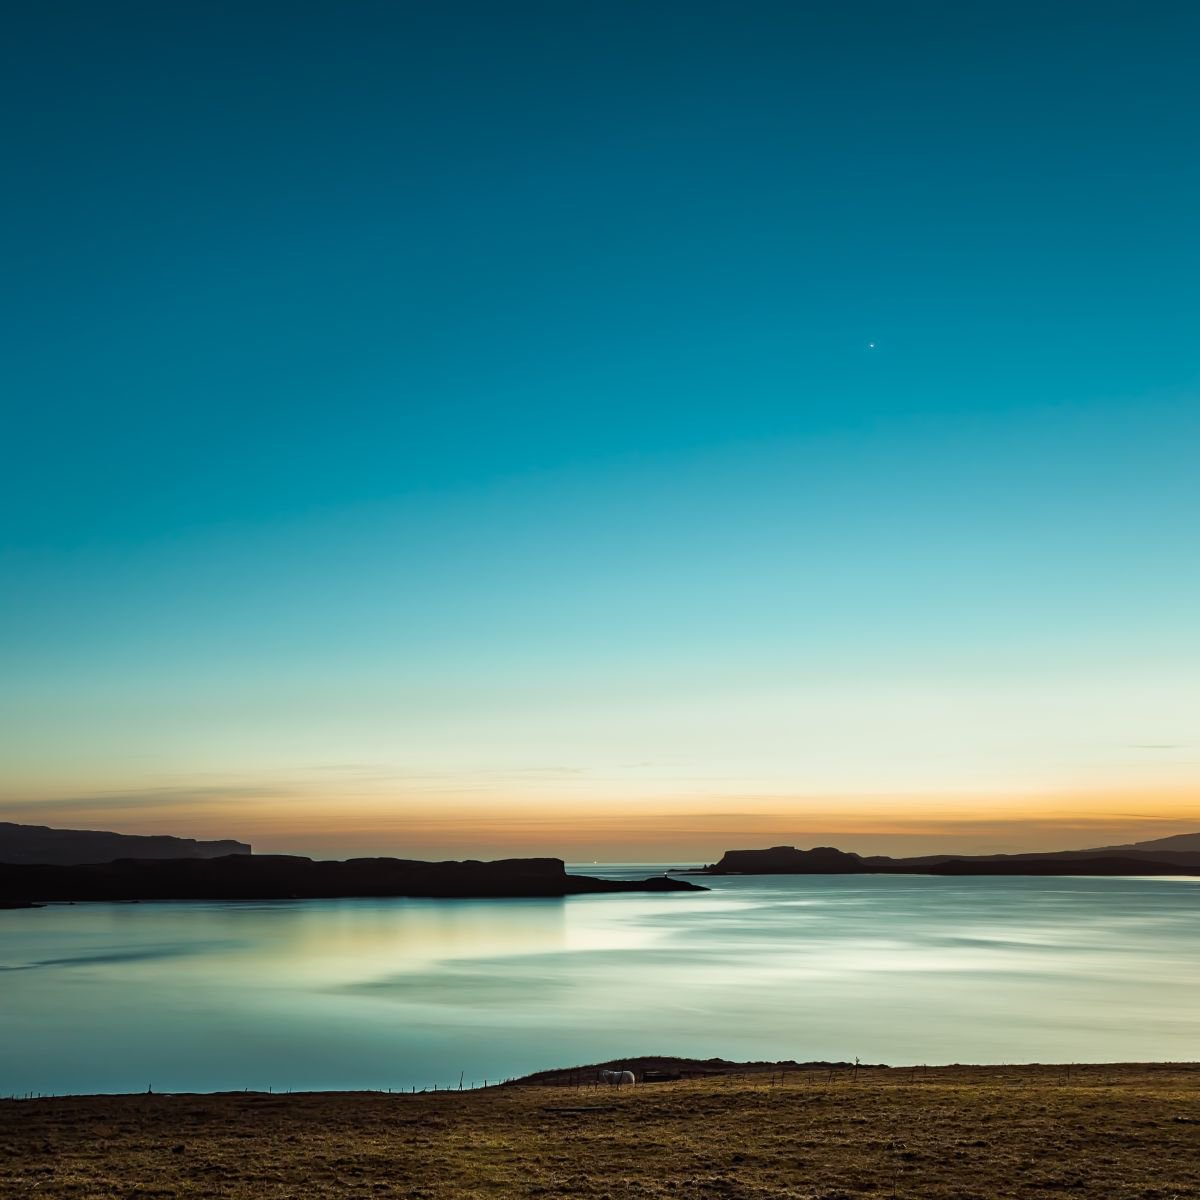 Serenity, Loch Harport, Isle of Skye, Minimalist Landscape, Teal Blue, Lighthouse by Lynne Douglas